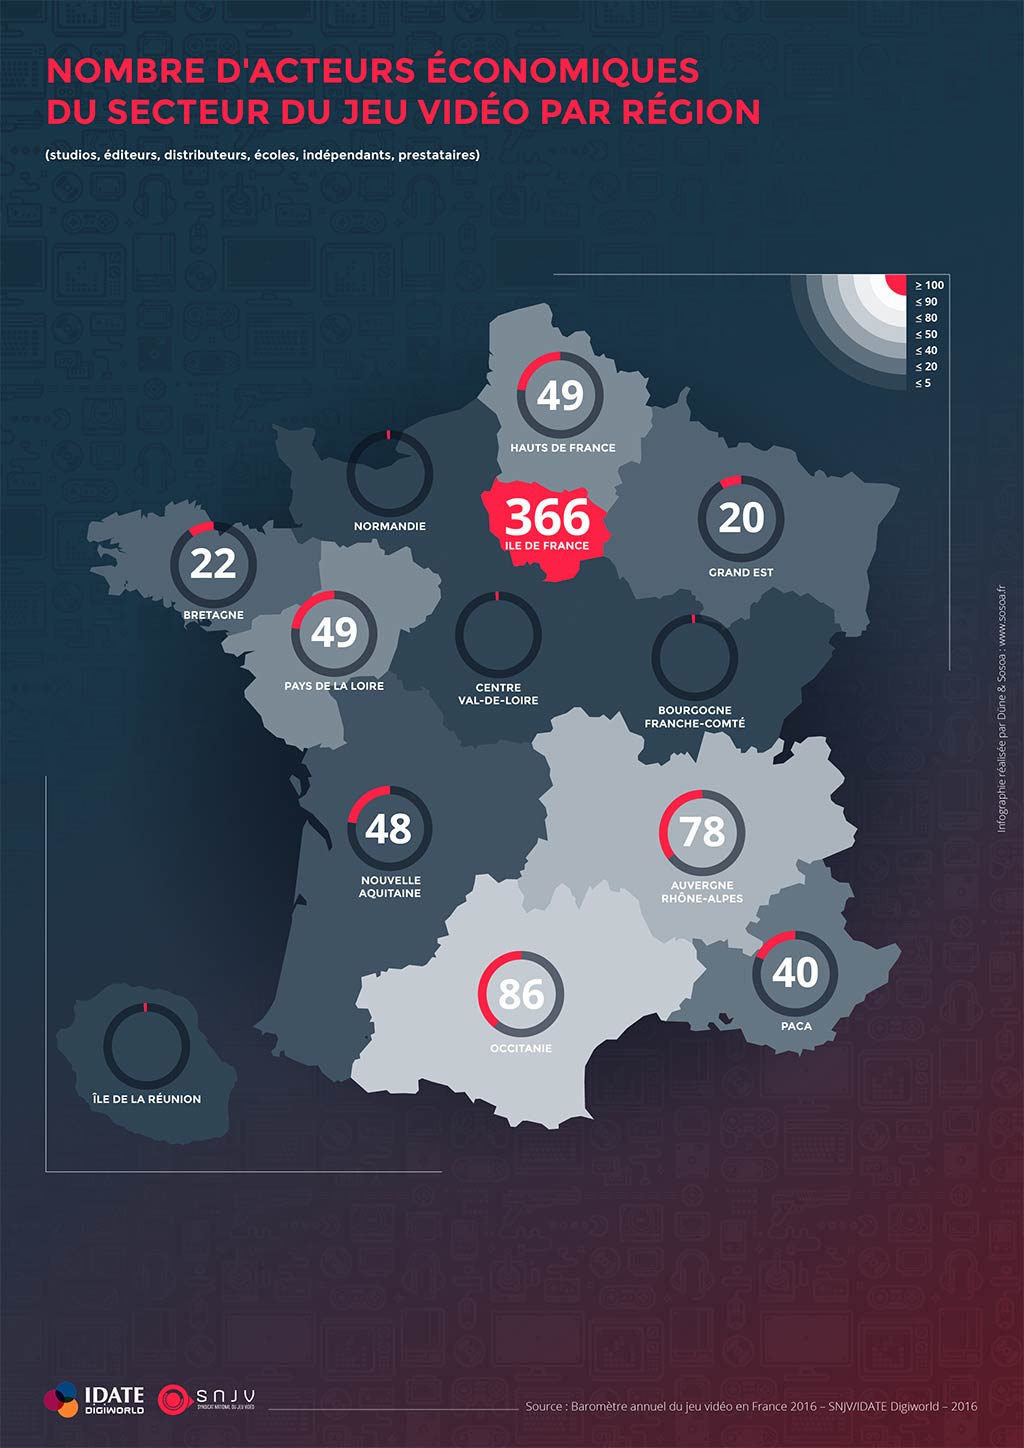 Nombre d'acteurs économiques du secteur du jeu vidéo par région française